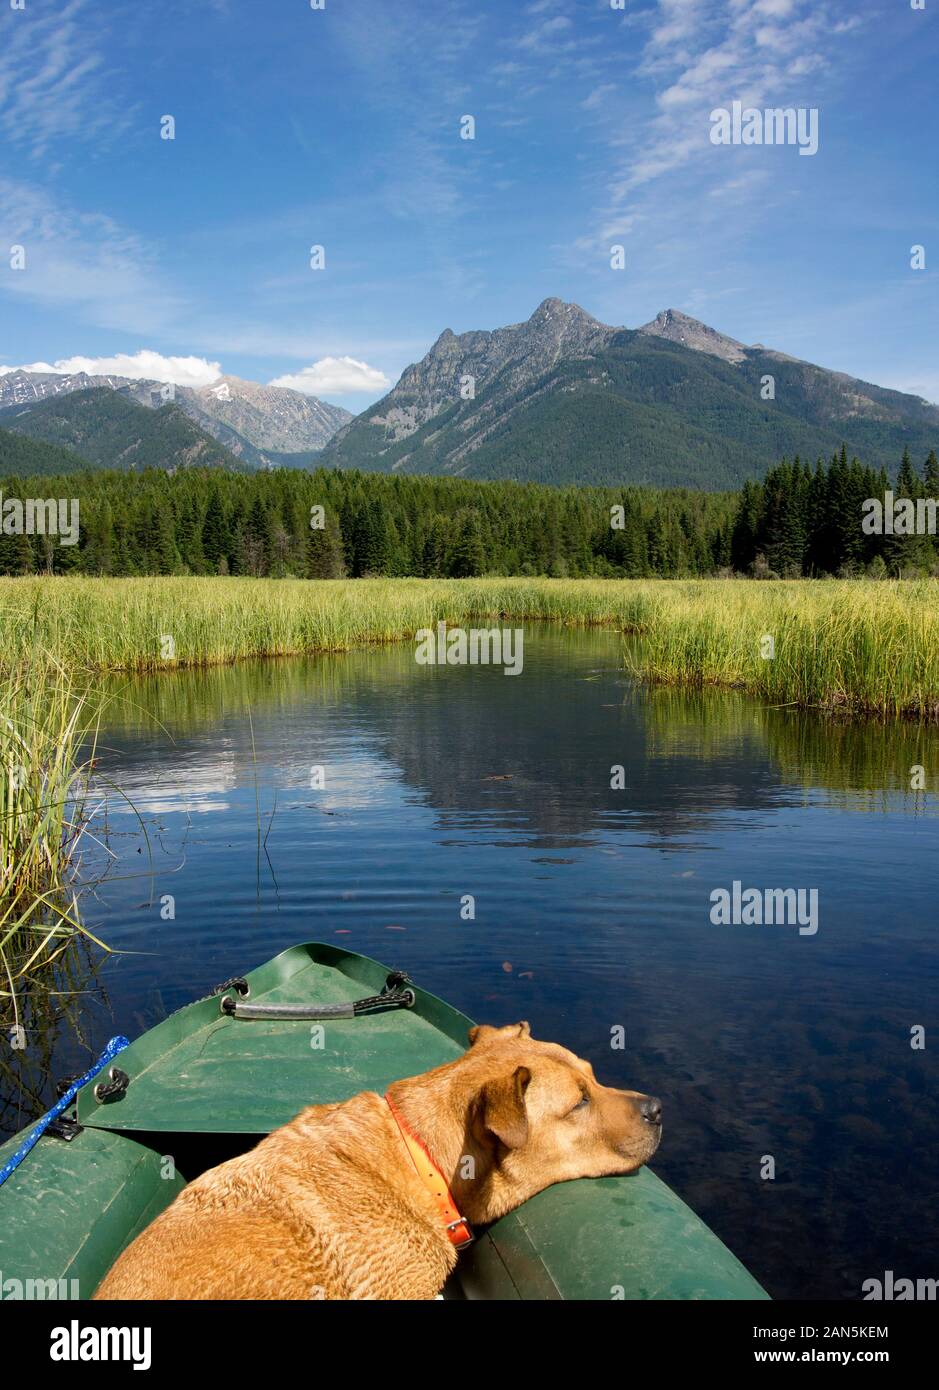 Bubba, dormendo sulla prua del kayak, dopo una lunga giornata che galleggia sulle dighe di castoro all'estremità superiore del fiume Bull, Contea di Sanders, Montana Foto Stock